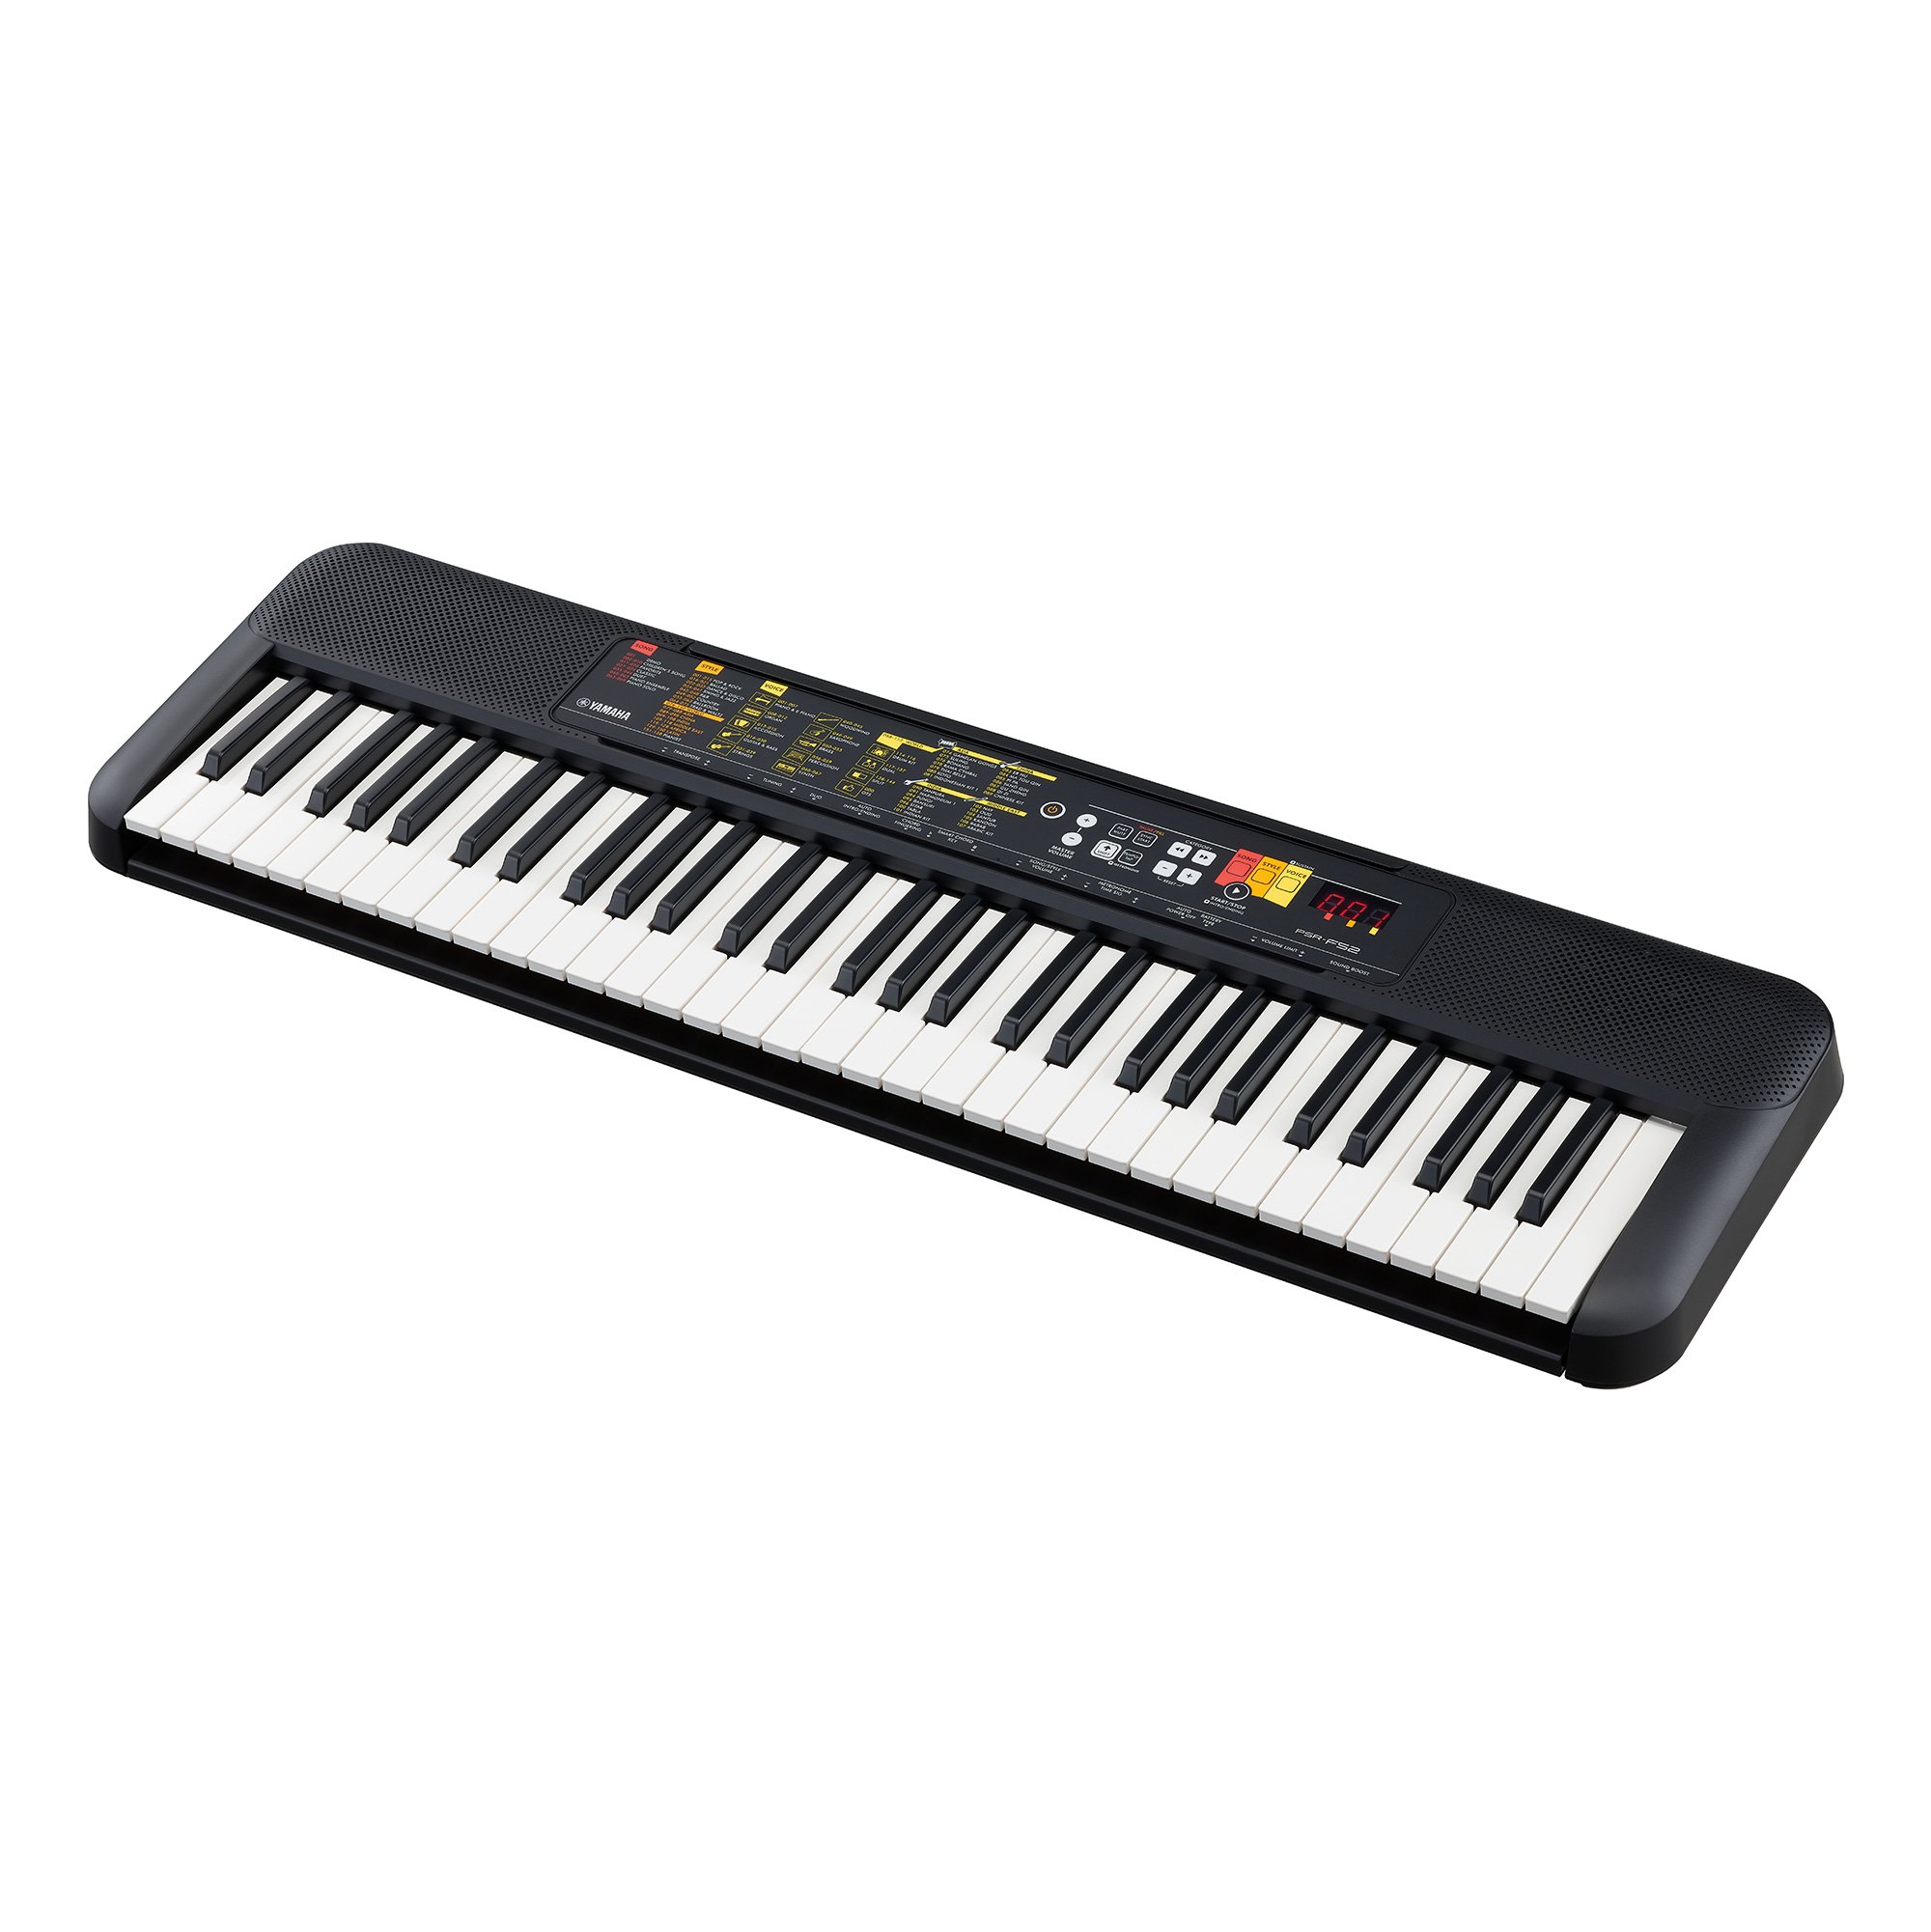 Đàn Organ điện tử, Portable Keyboard - Yamaha PSR-F52 (PSR F52) - Best keyboard for beginner - Hàng chính hãng